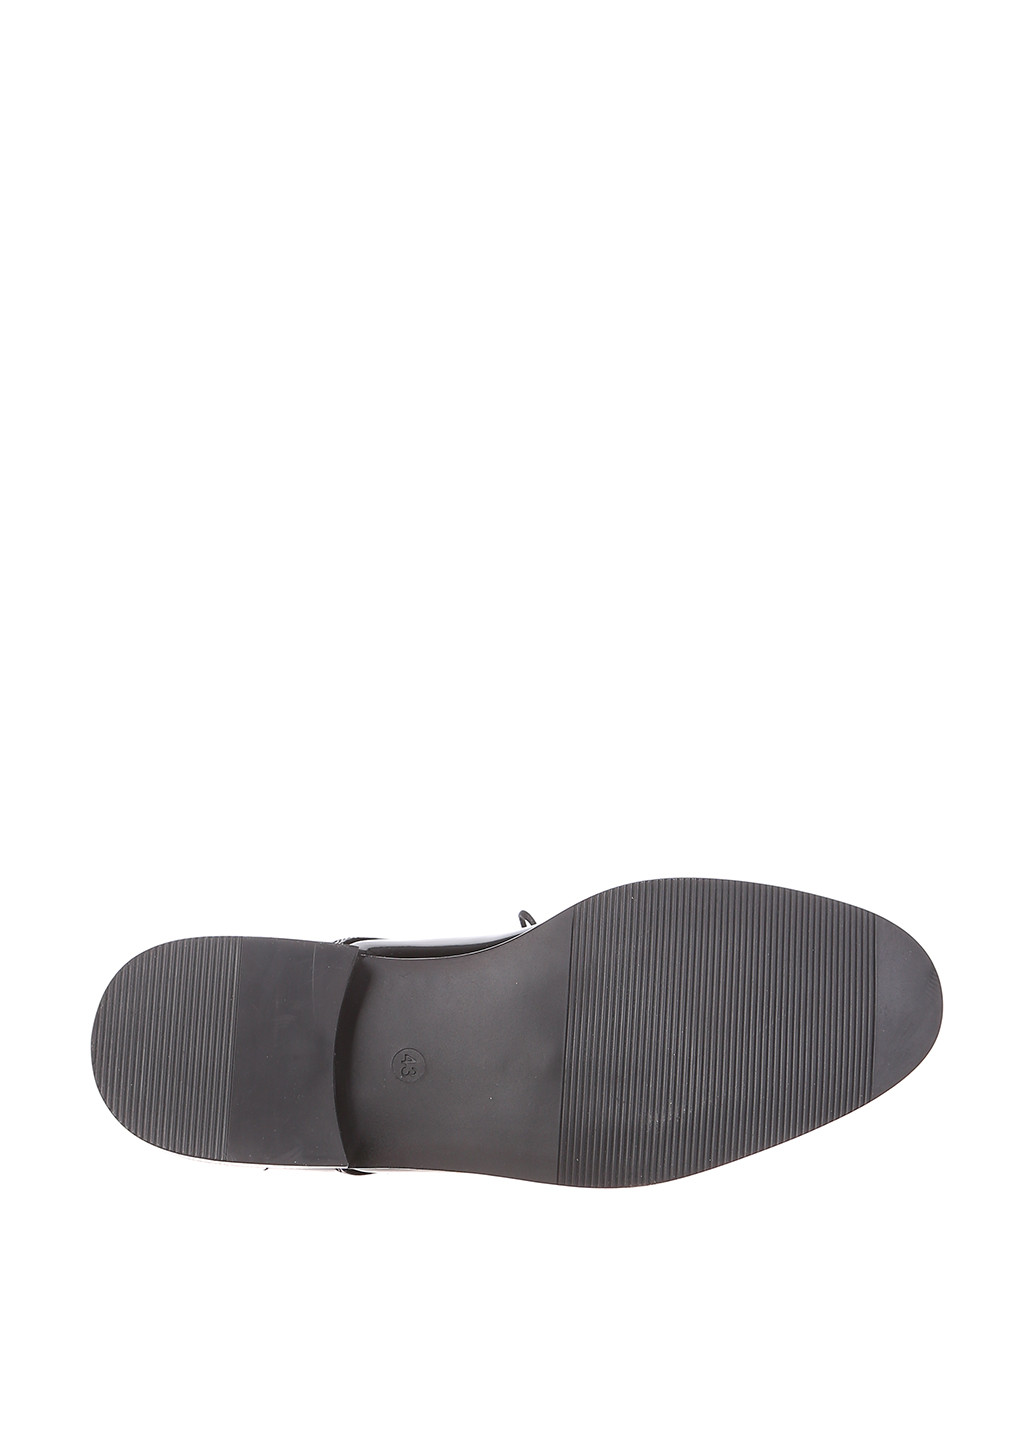 Черные классические туфли H&M на шнурках